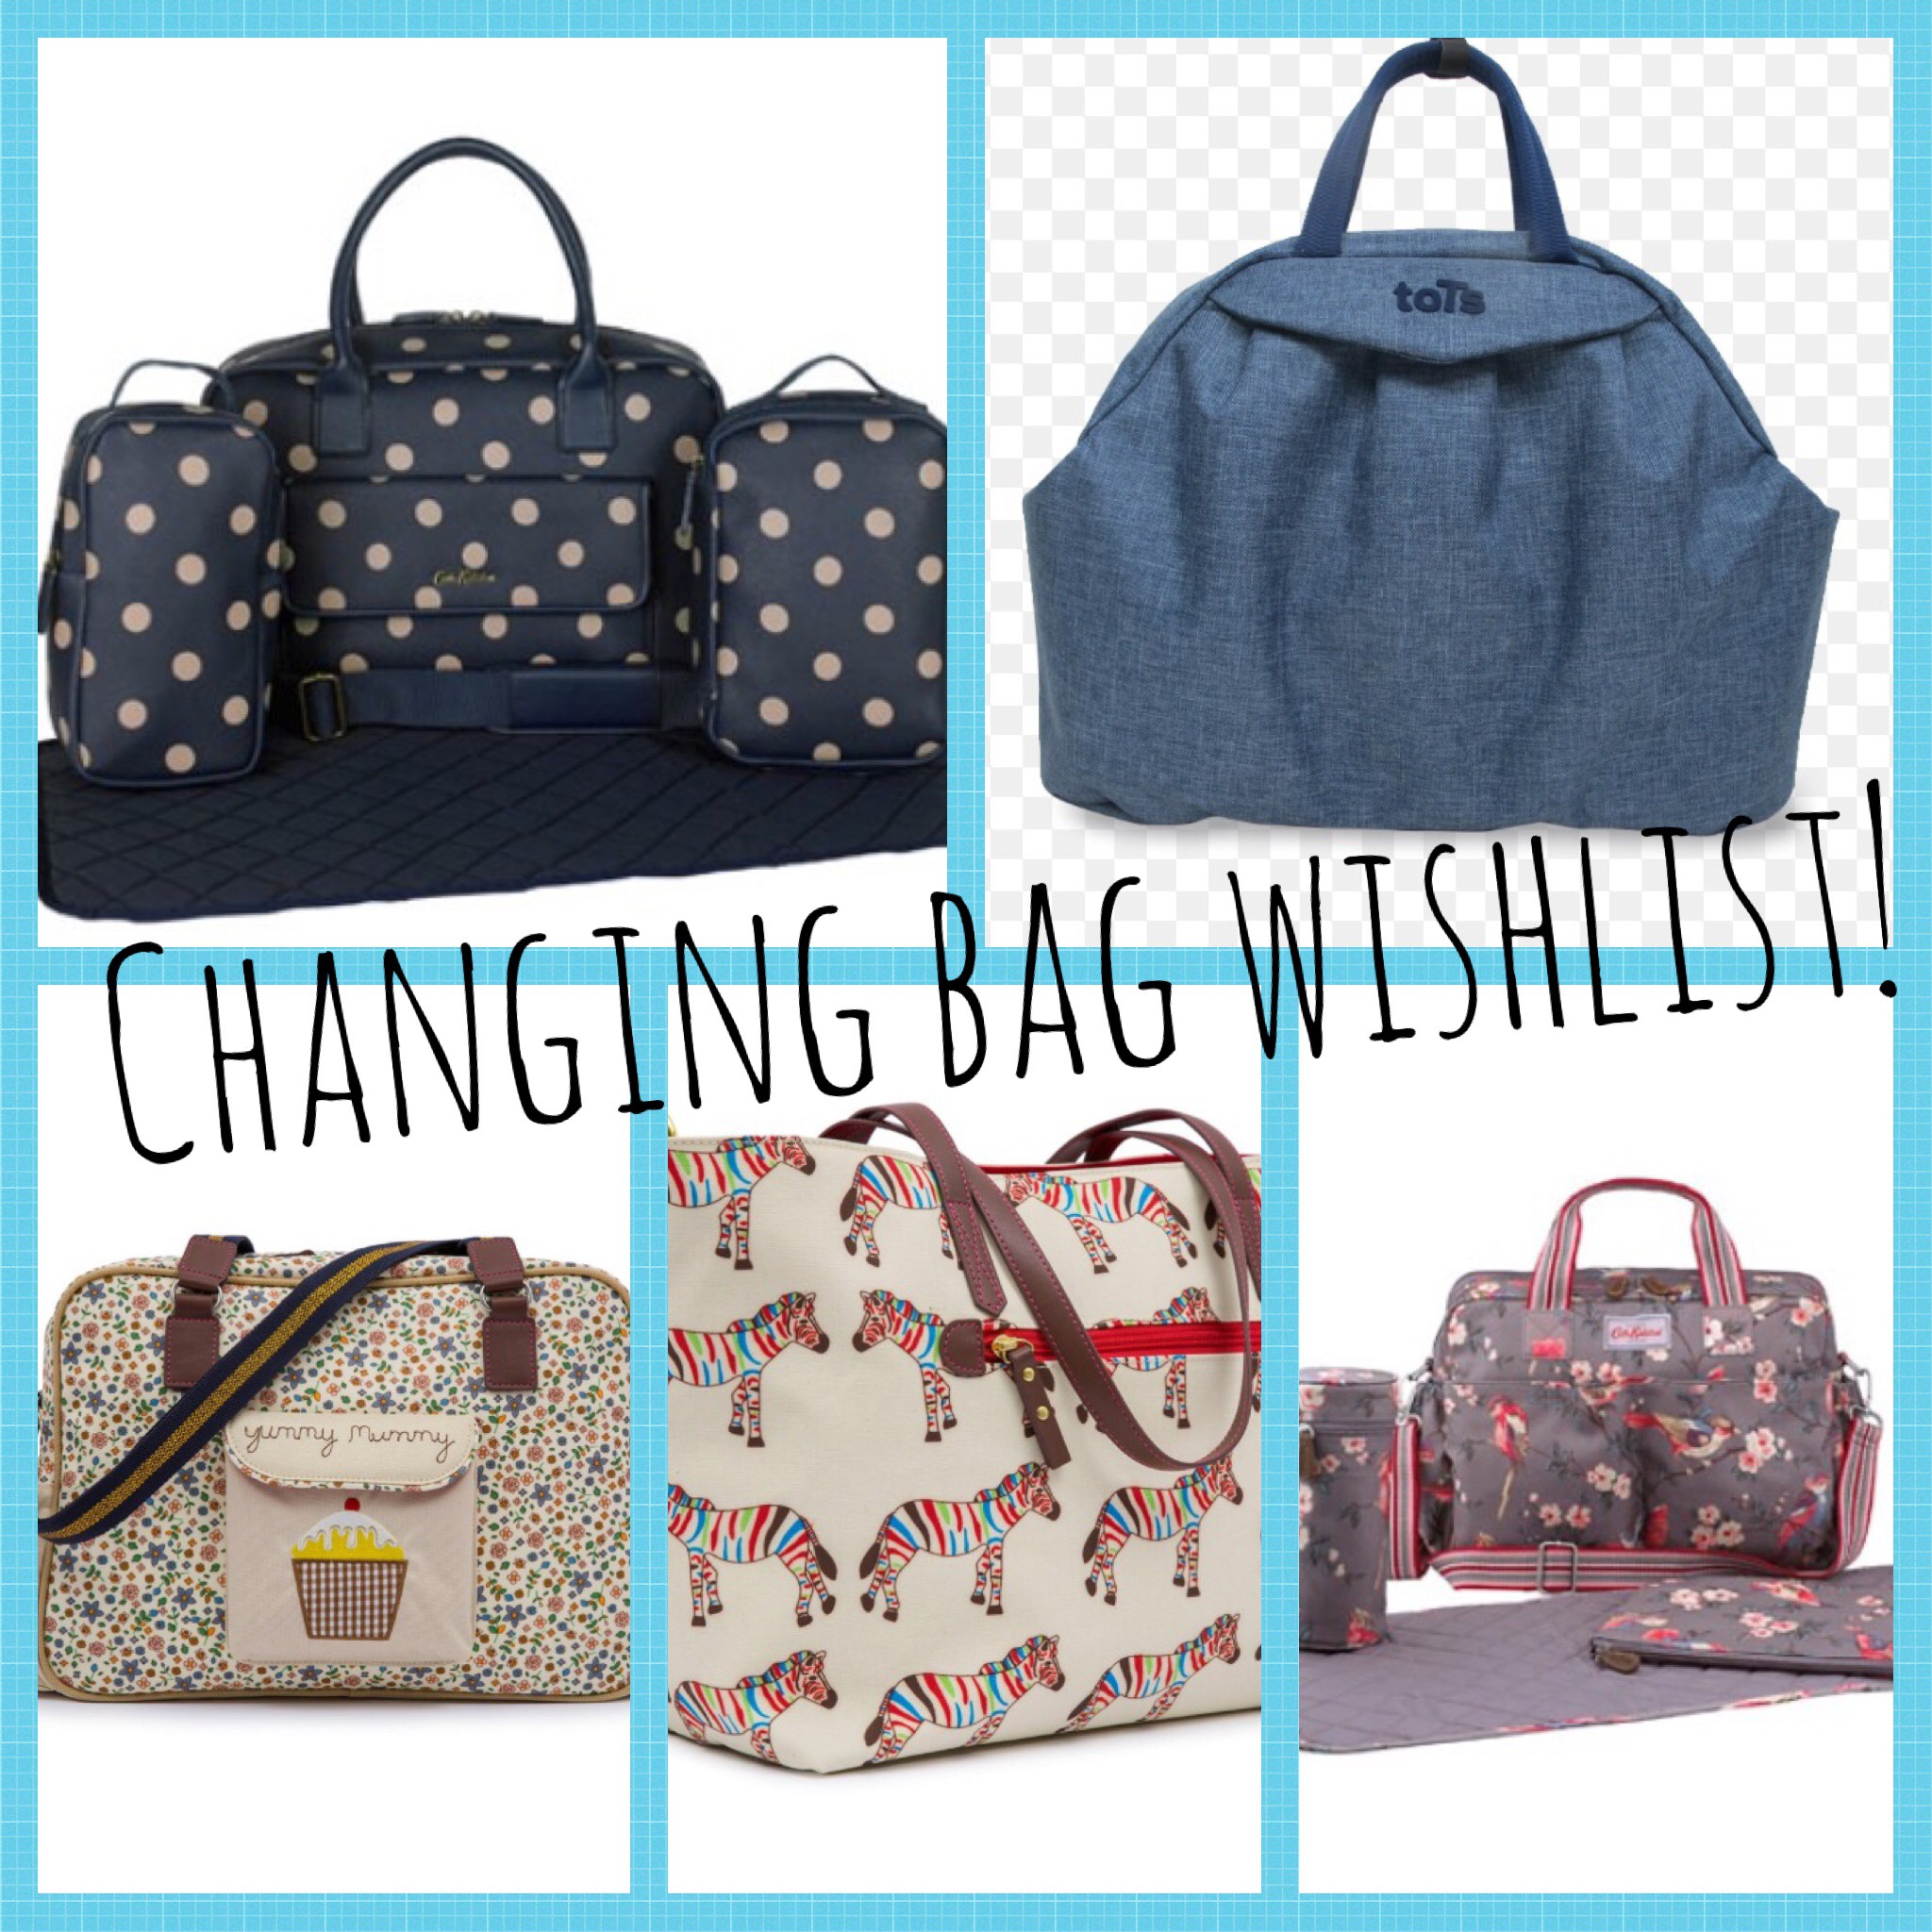 Changing bag wishlist – yummyblogger.com